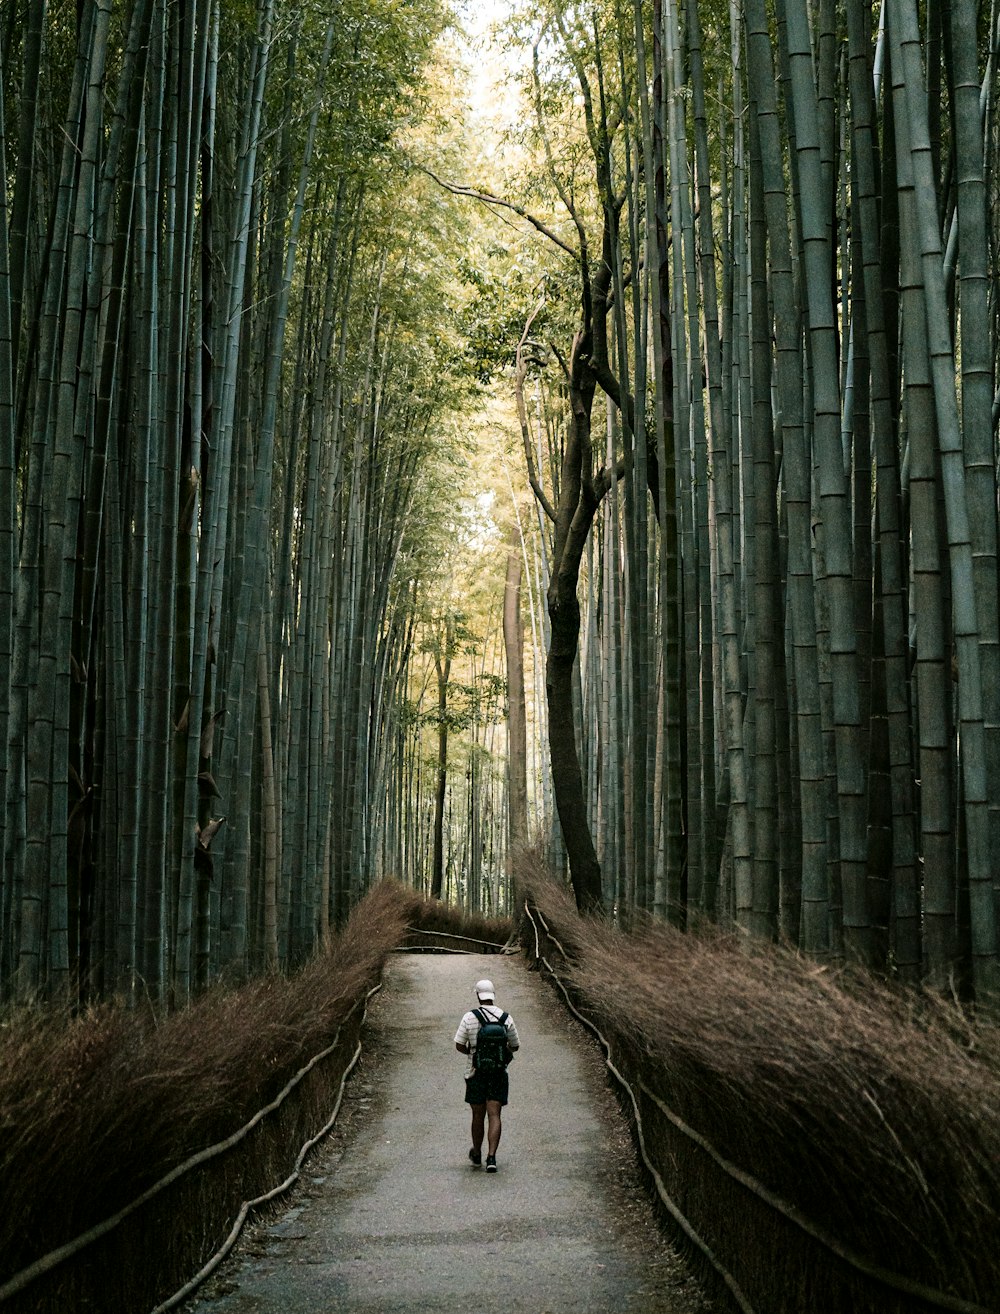 Una persona che cammina lungo un sentiero in una foresta di bambù